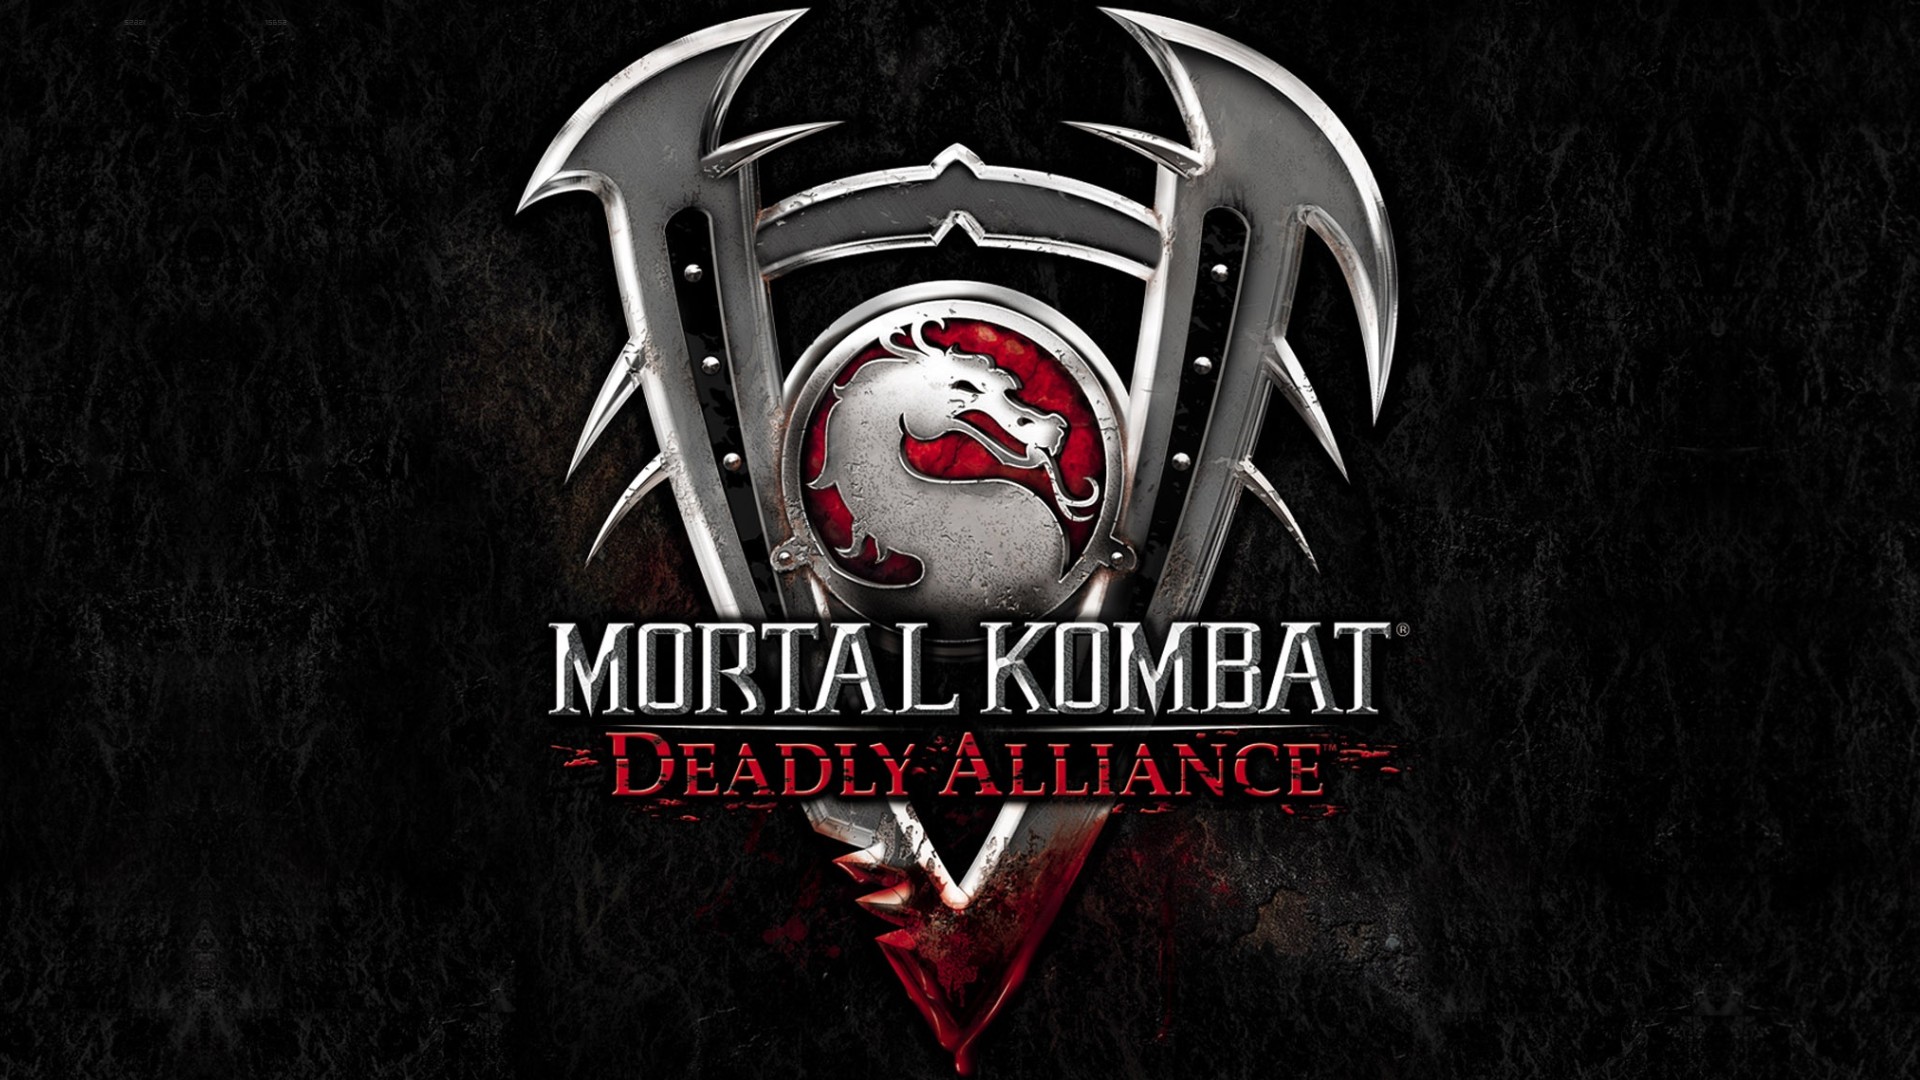 Mortal Kombat: Deadly Alliance Lock Screen Mobile